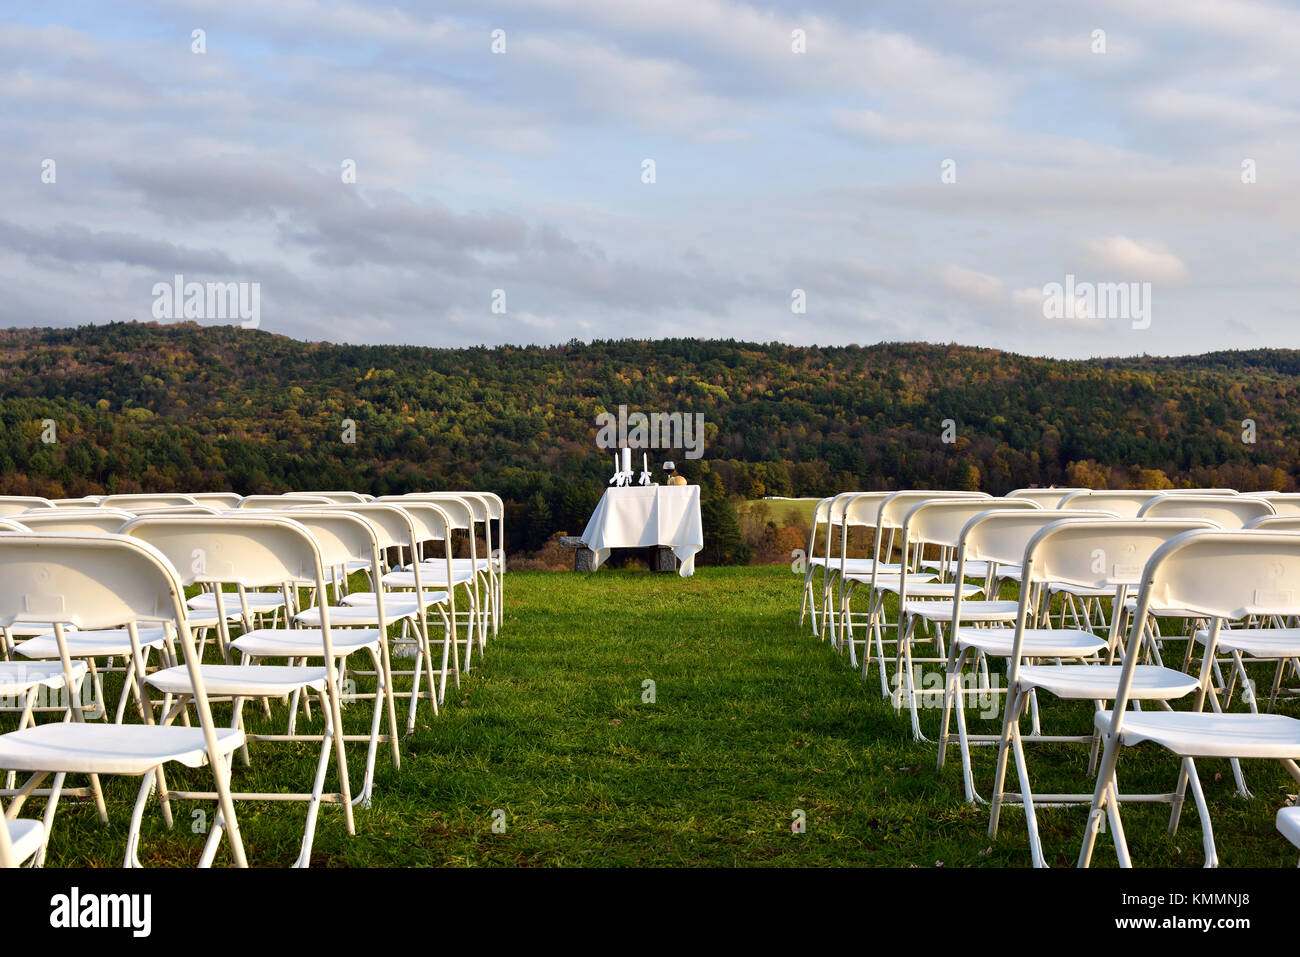 Réception de mariage en plein air, d'ententes de services, des chaises, une table, du pain et du vin pour une cérémonie simple avec une belle vue Banque D'Images